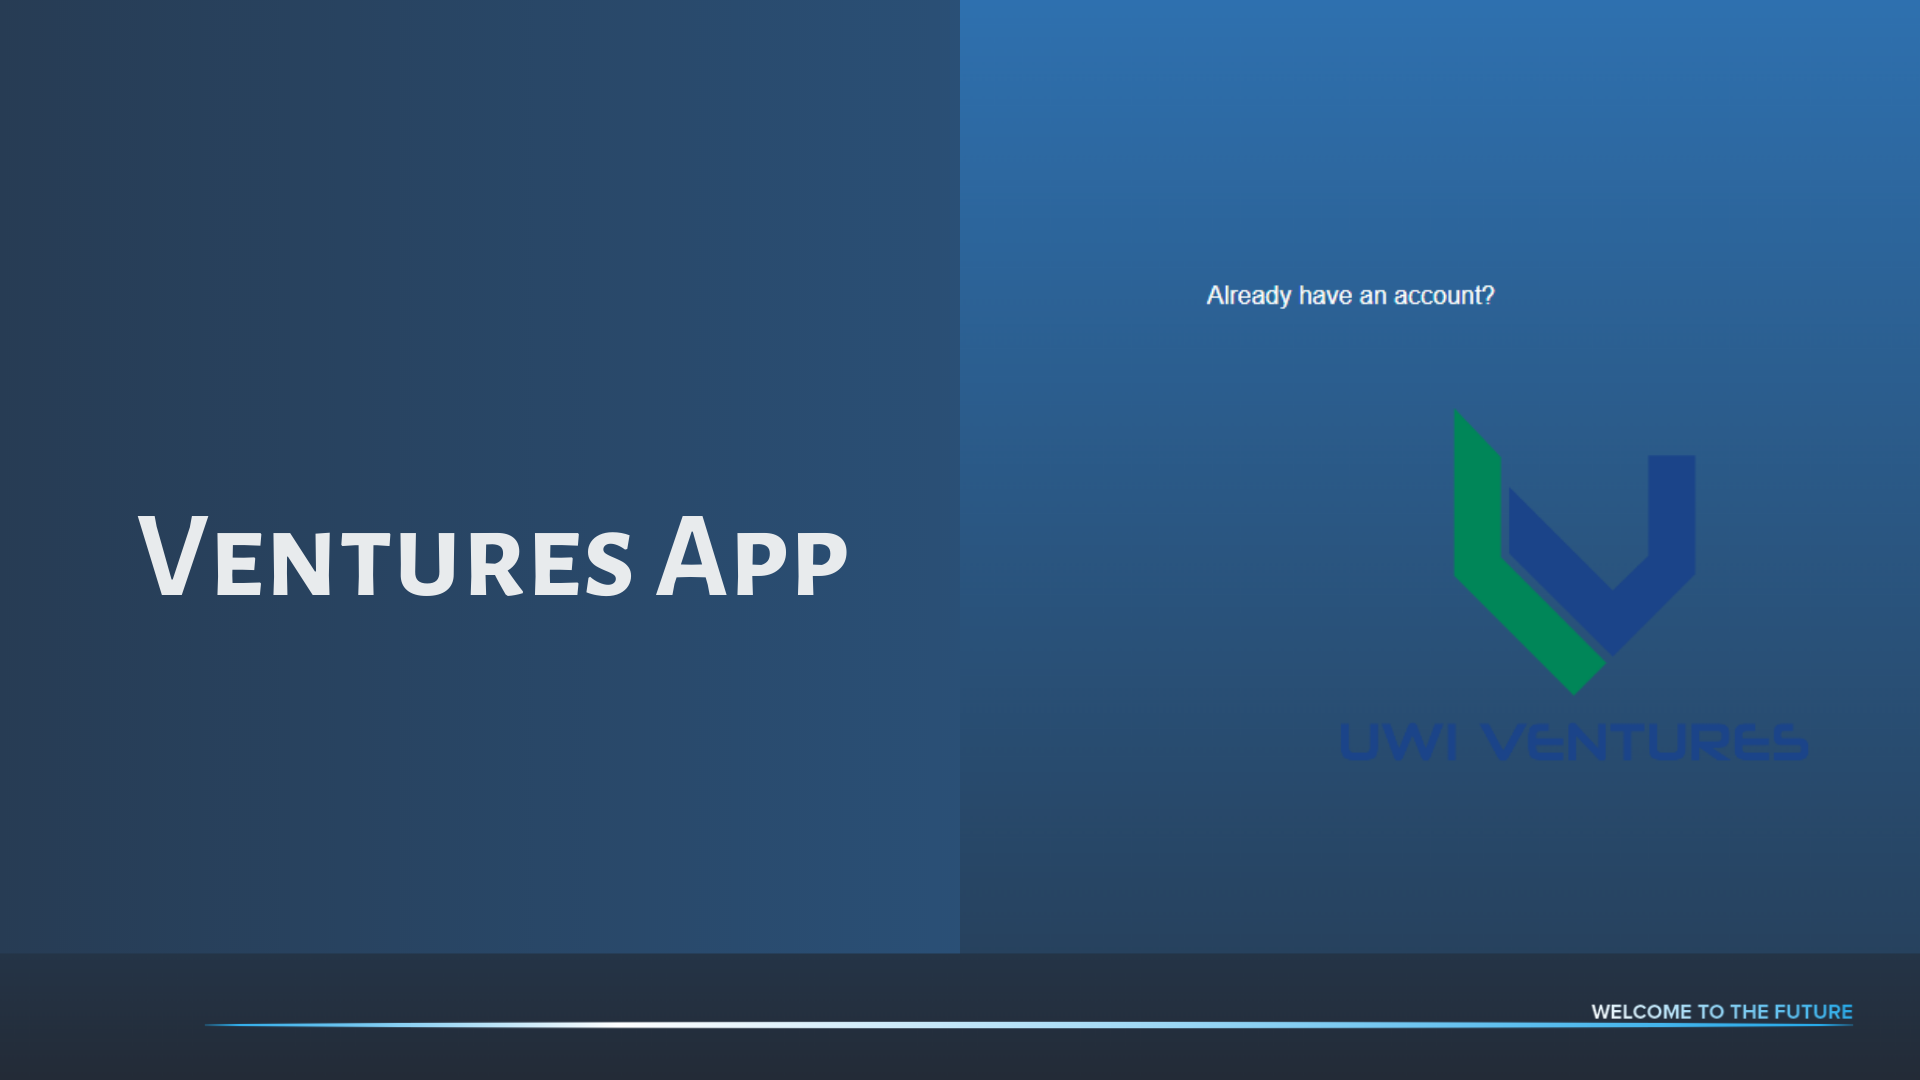 UWI Ventures App